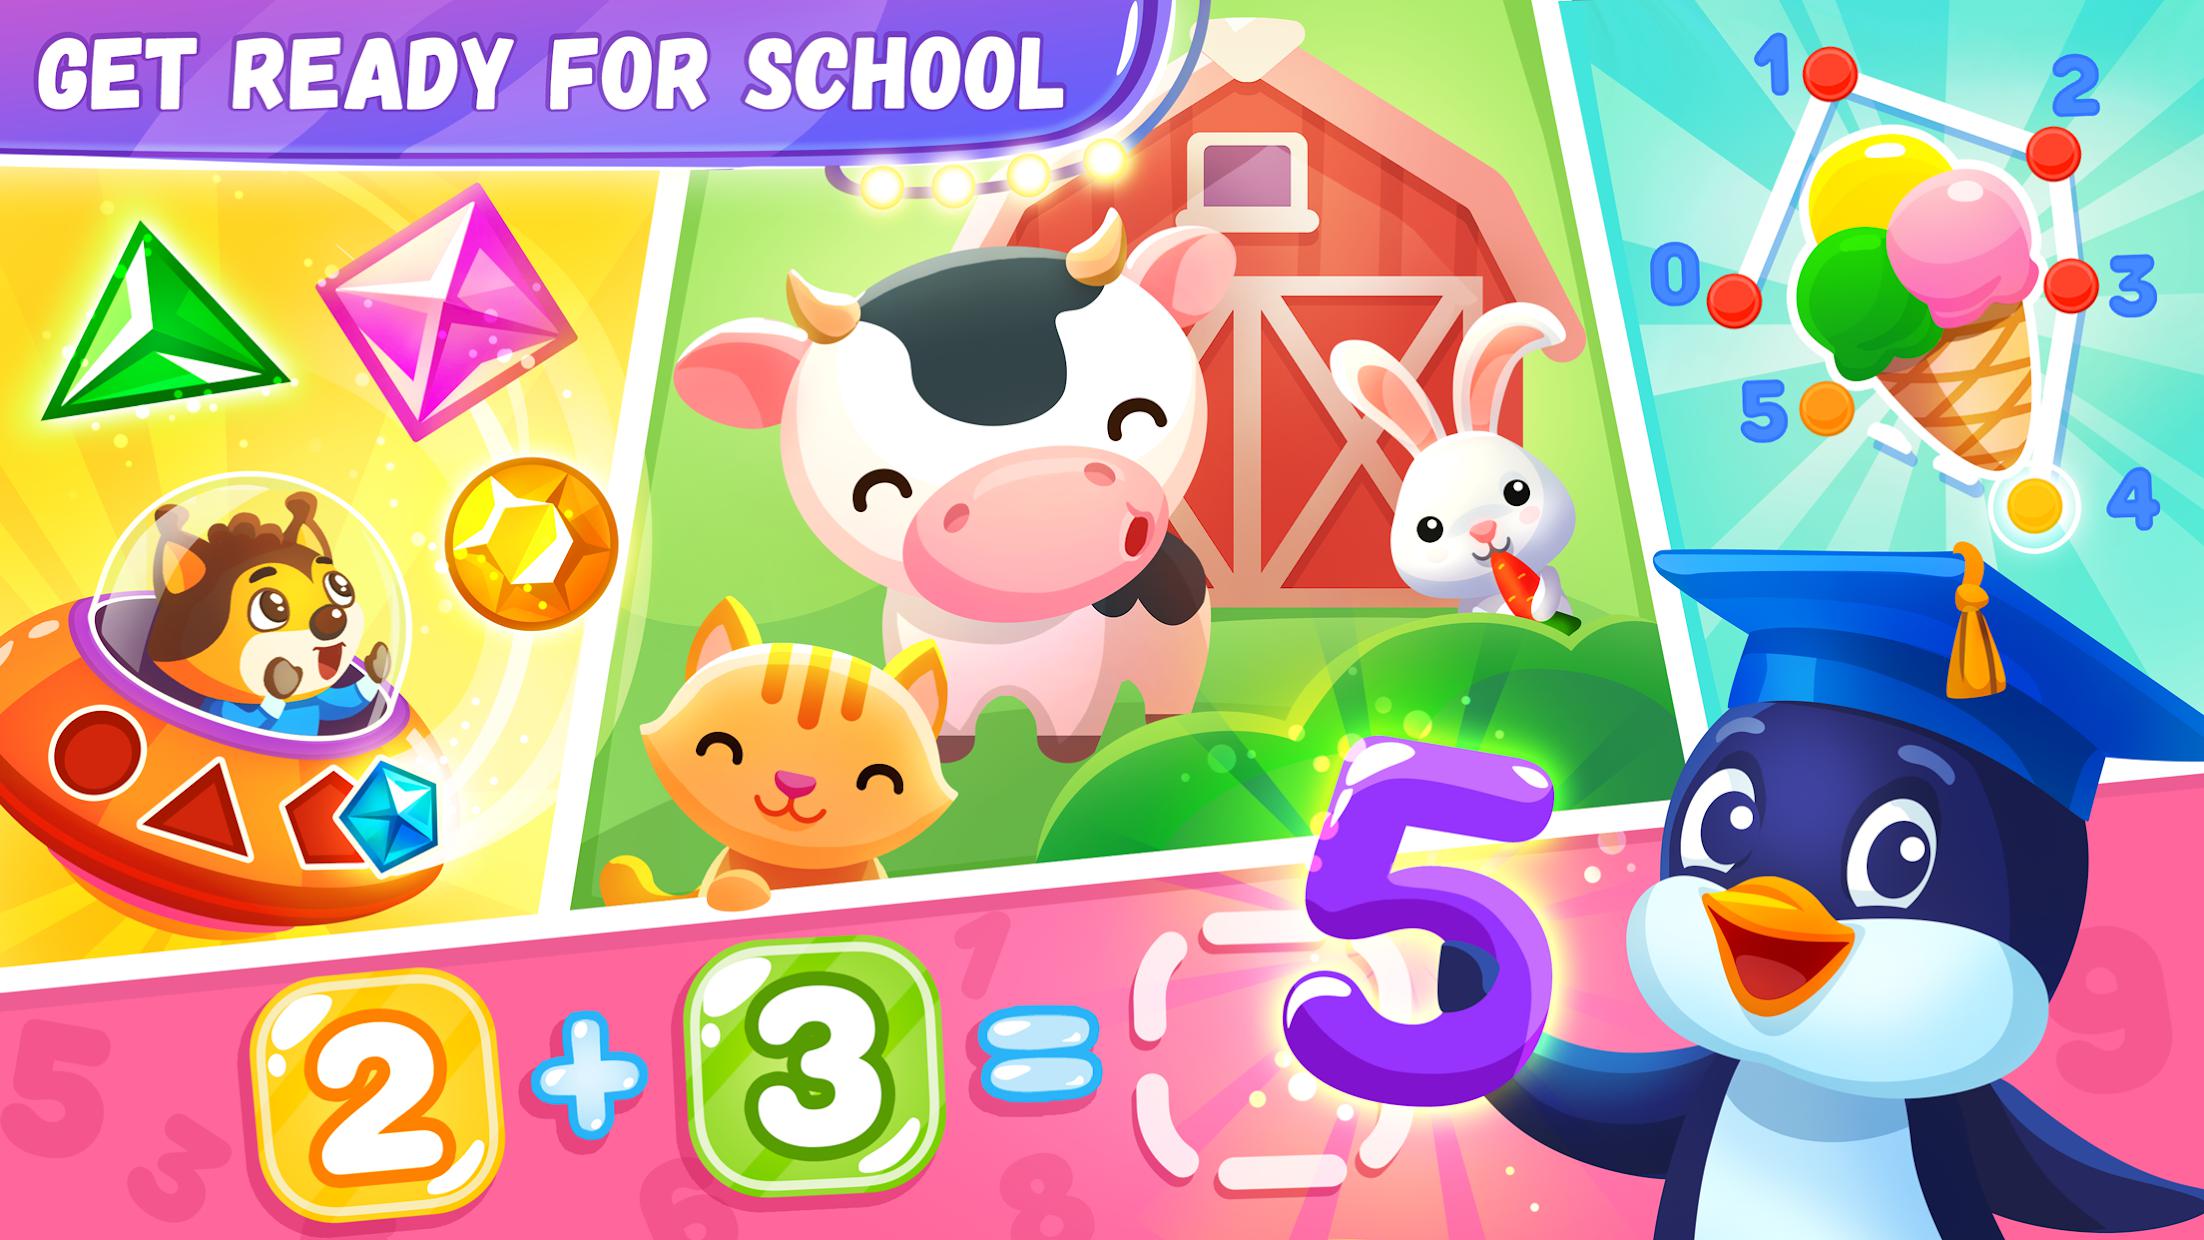 Amaya Kids World - Fun educational games for kids_截图_4